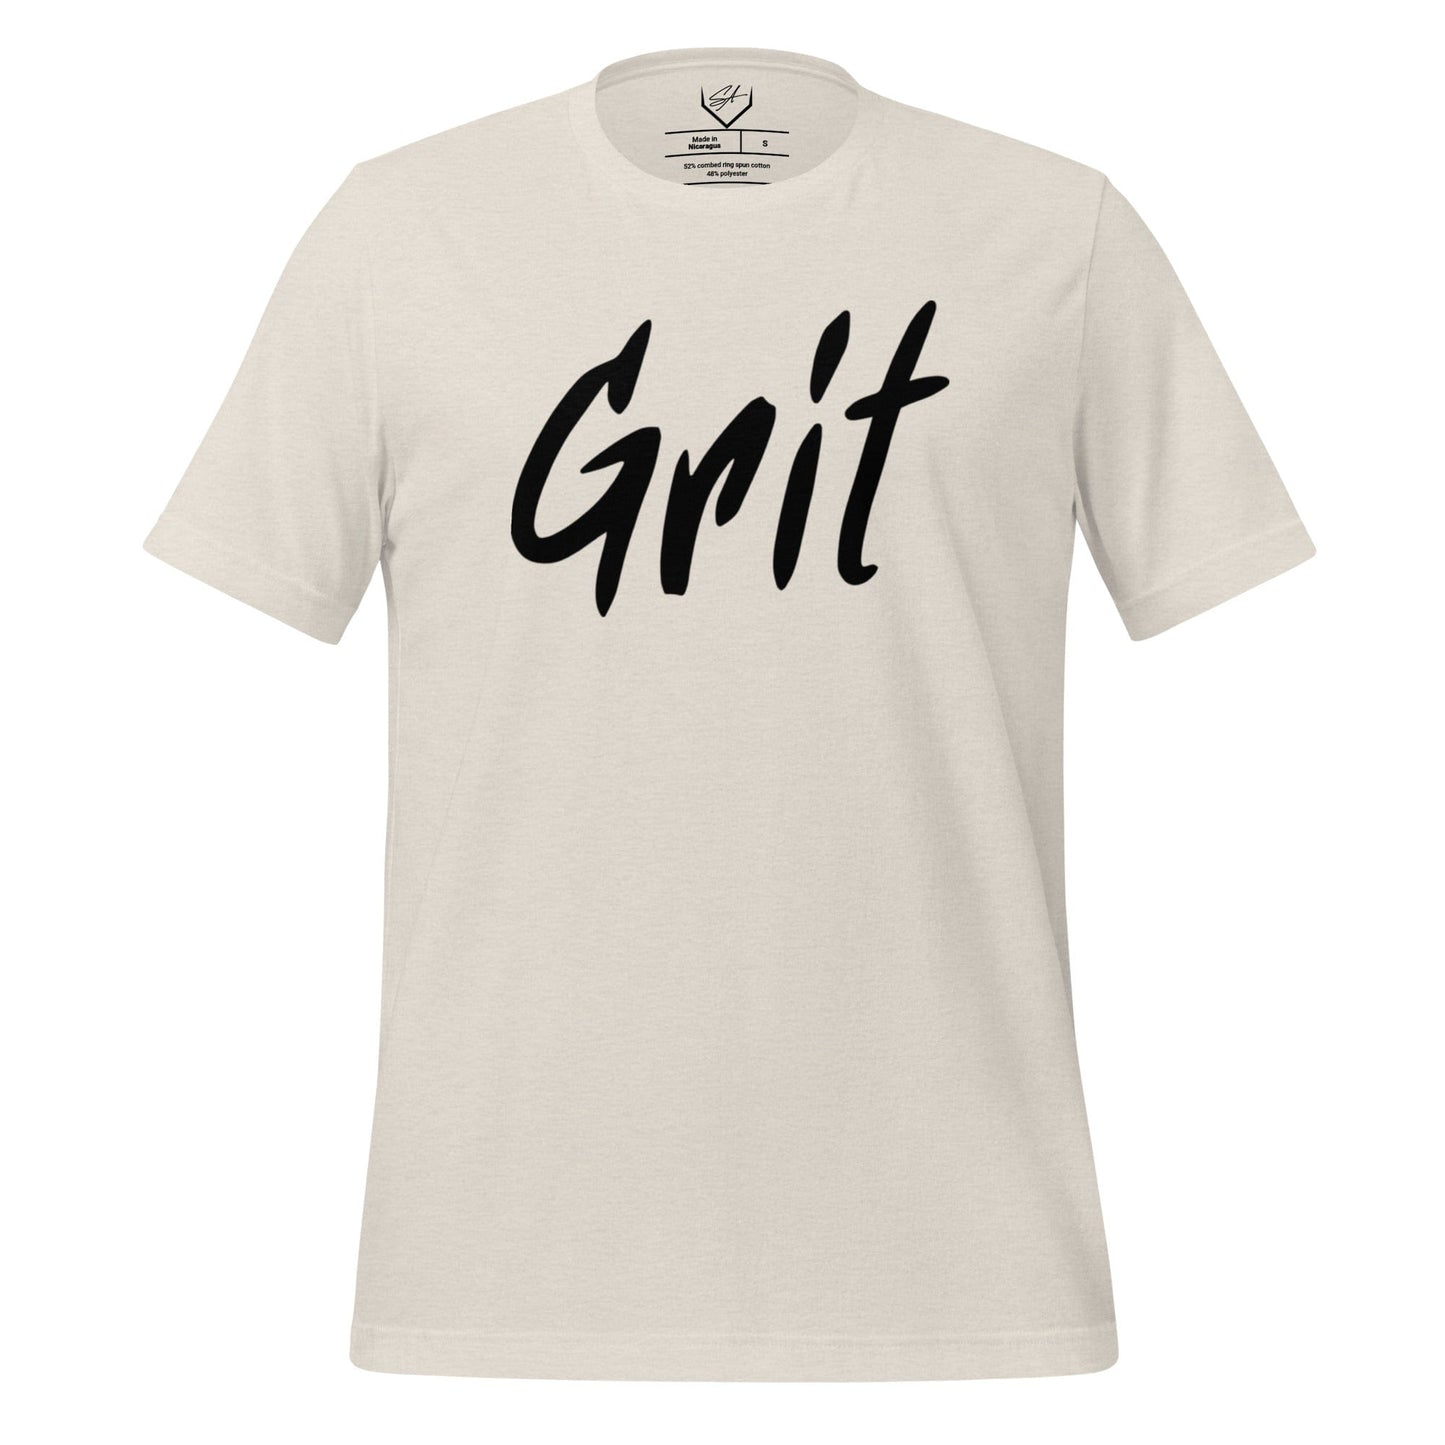 Grit - Adult Tee